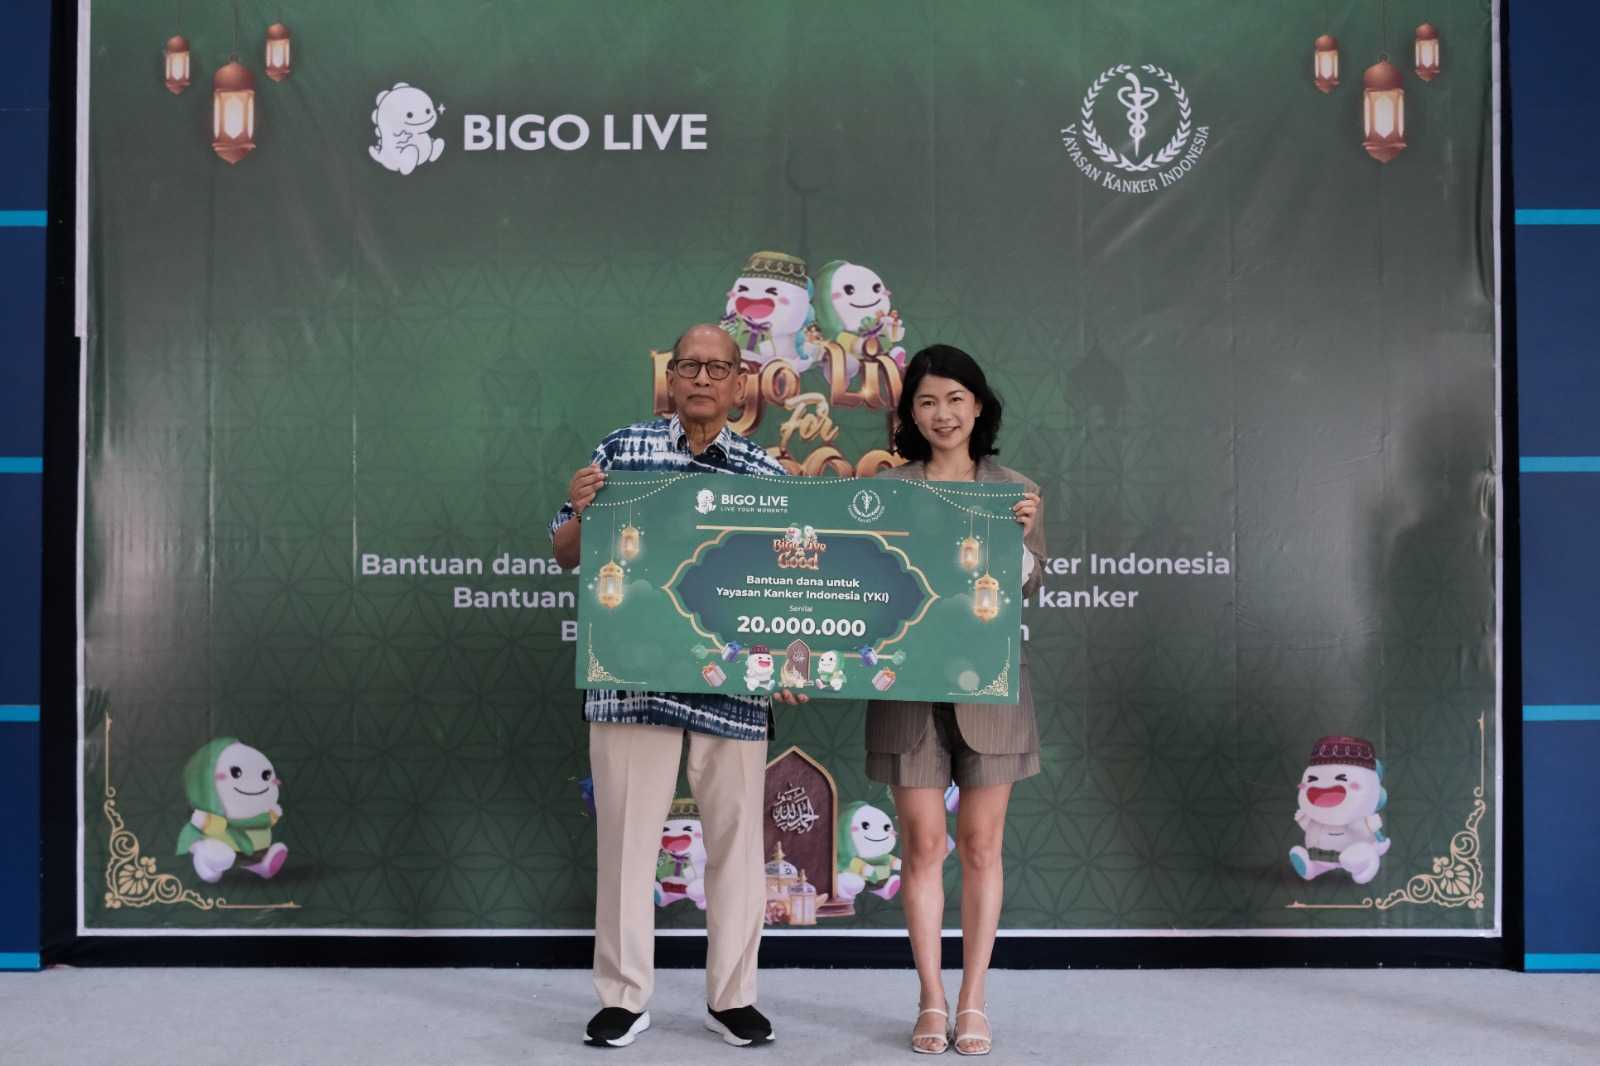 Bigo Live for Good Sukses Galang Dana untuk Yayasan Kanker Indonesia